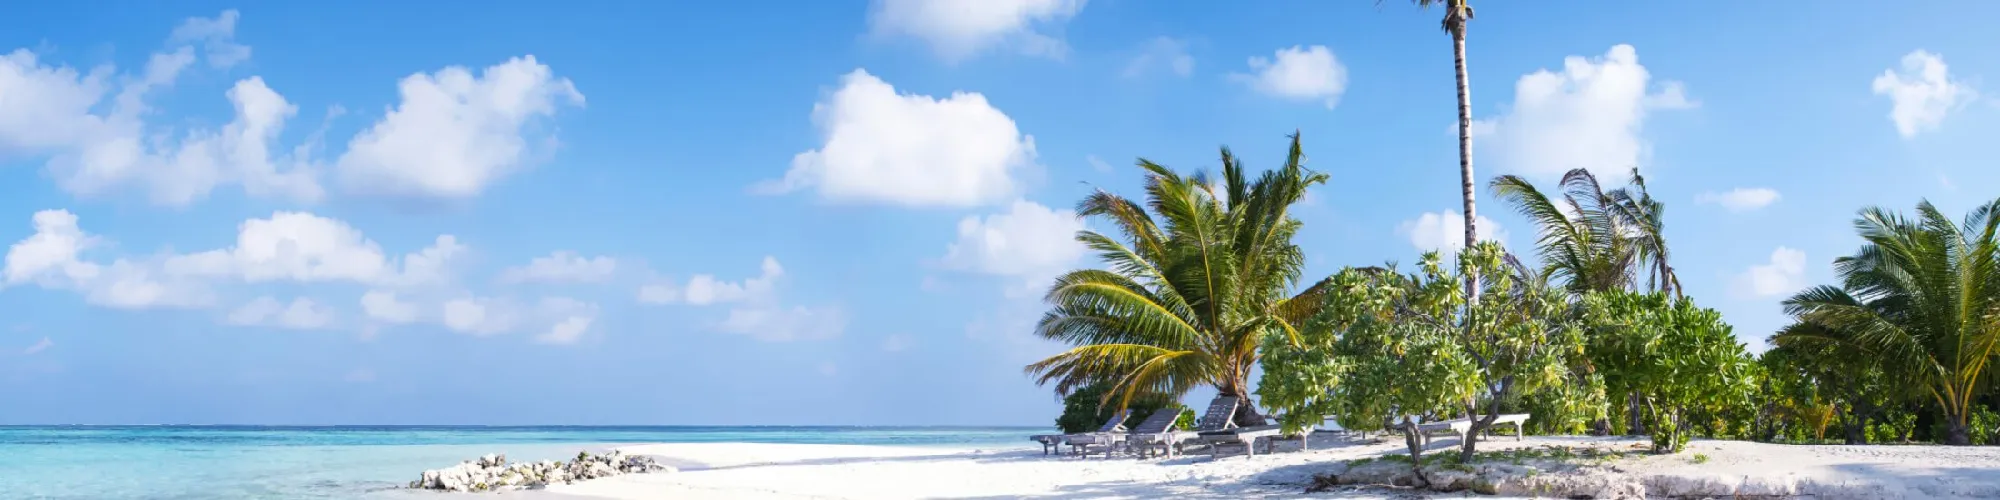 Traumreisen auf die Malediven background image